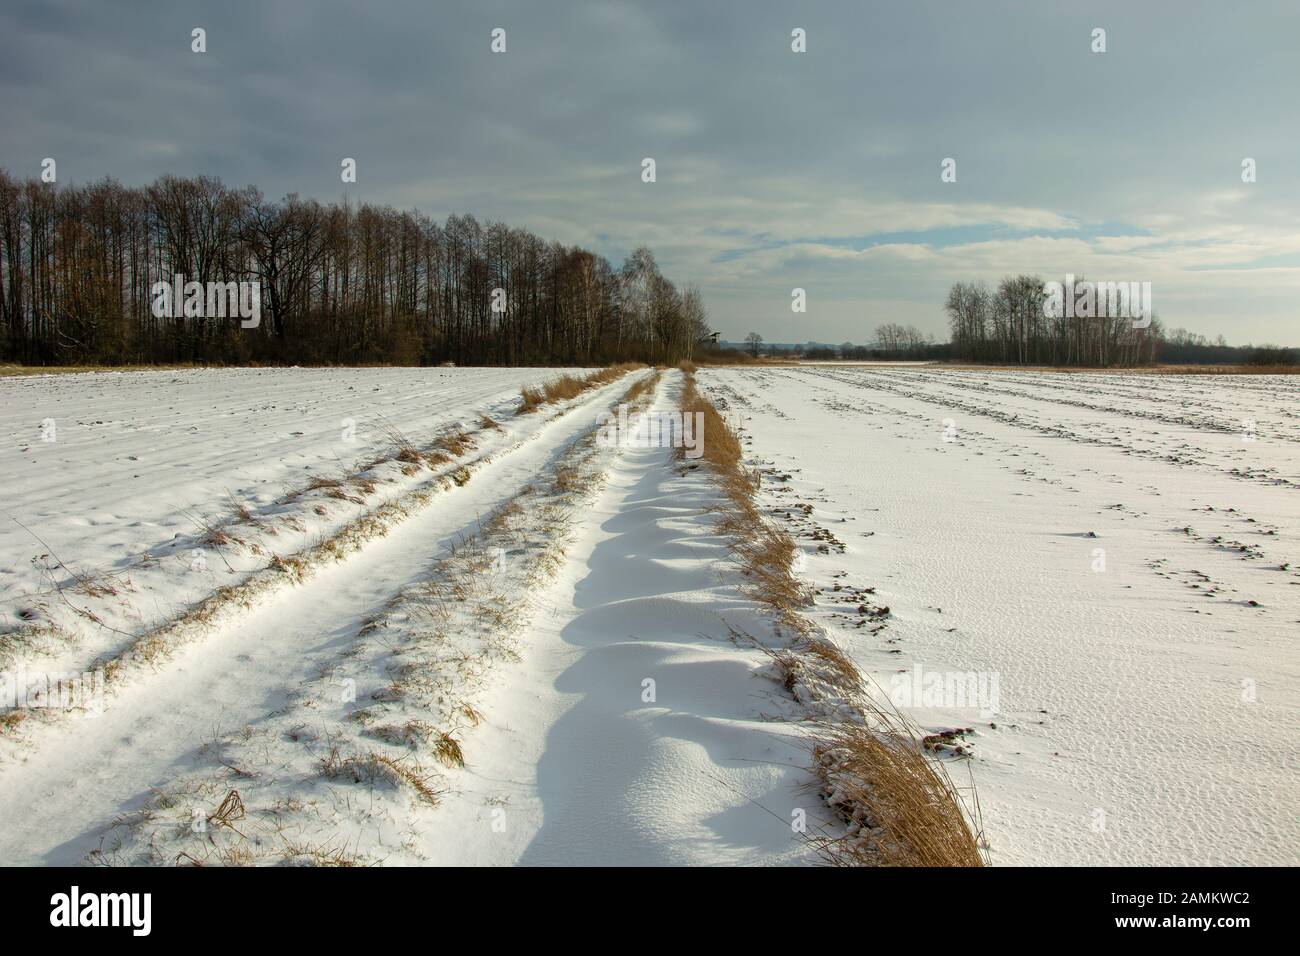 Une route de terre, recouverte de neige, de forêt et de nuages gris sur le ciel Banque D'Images